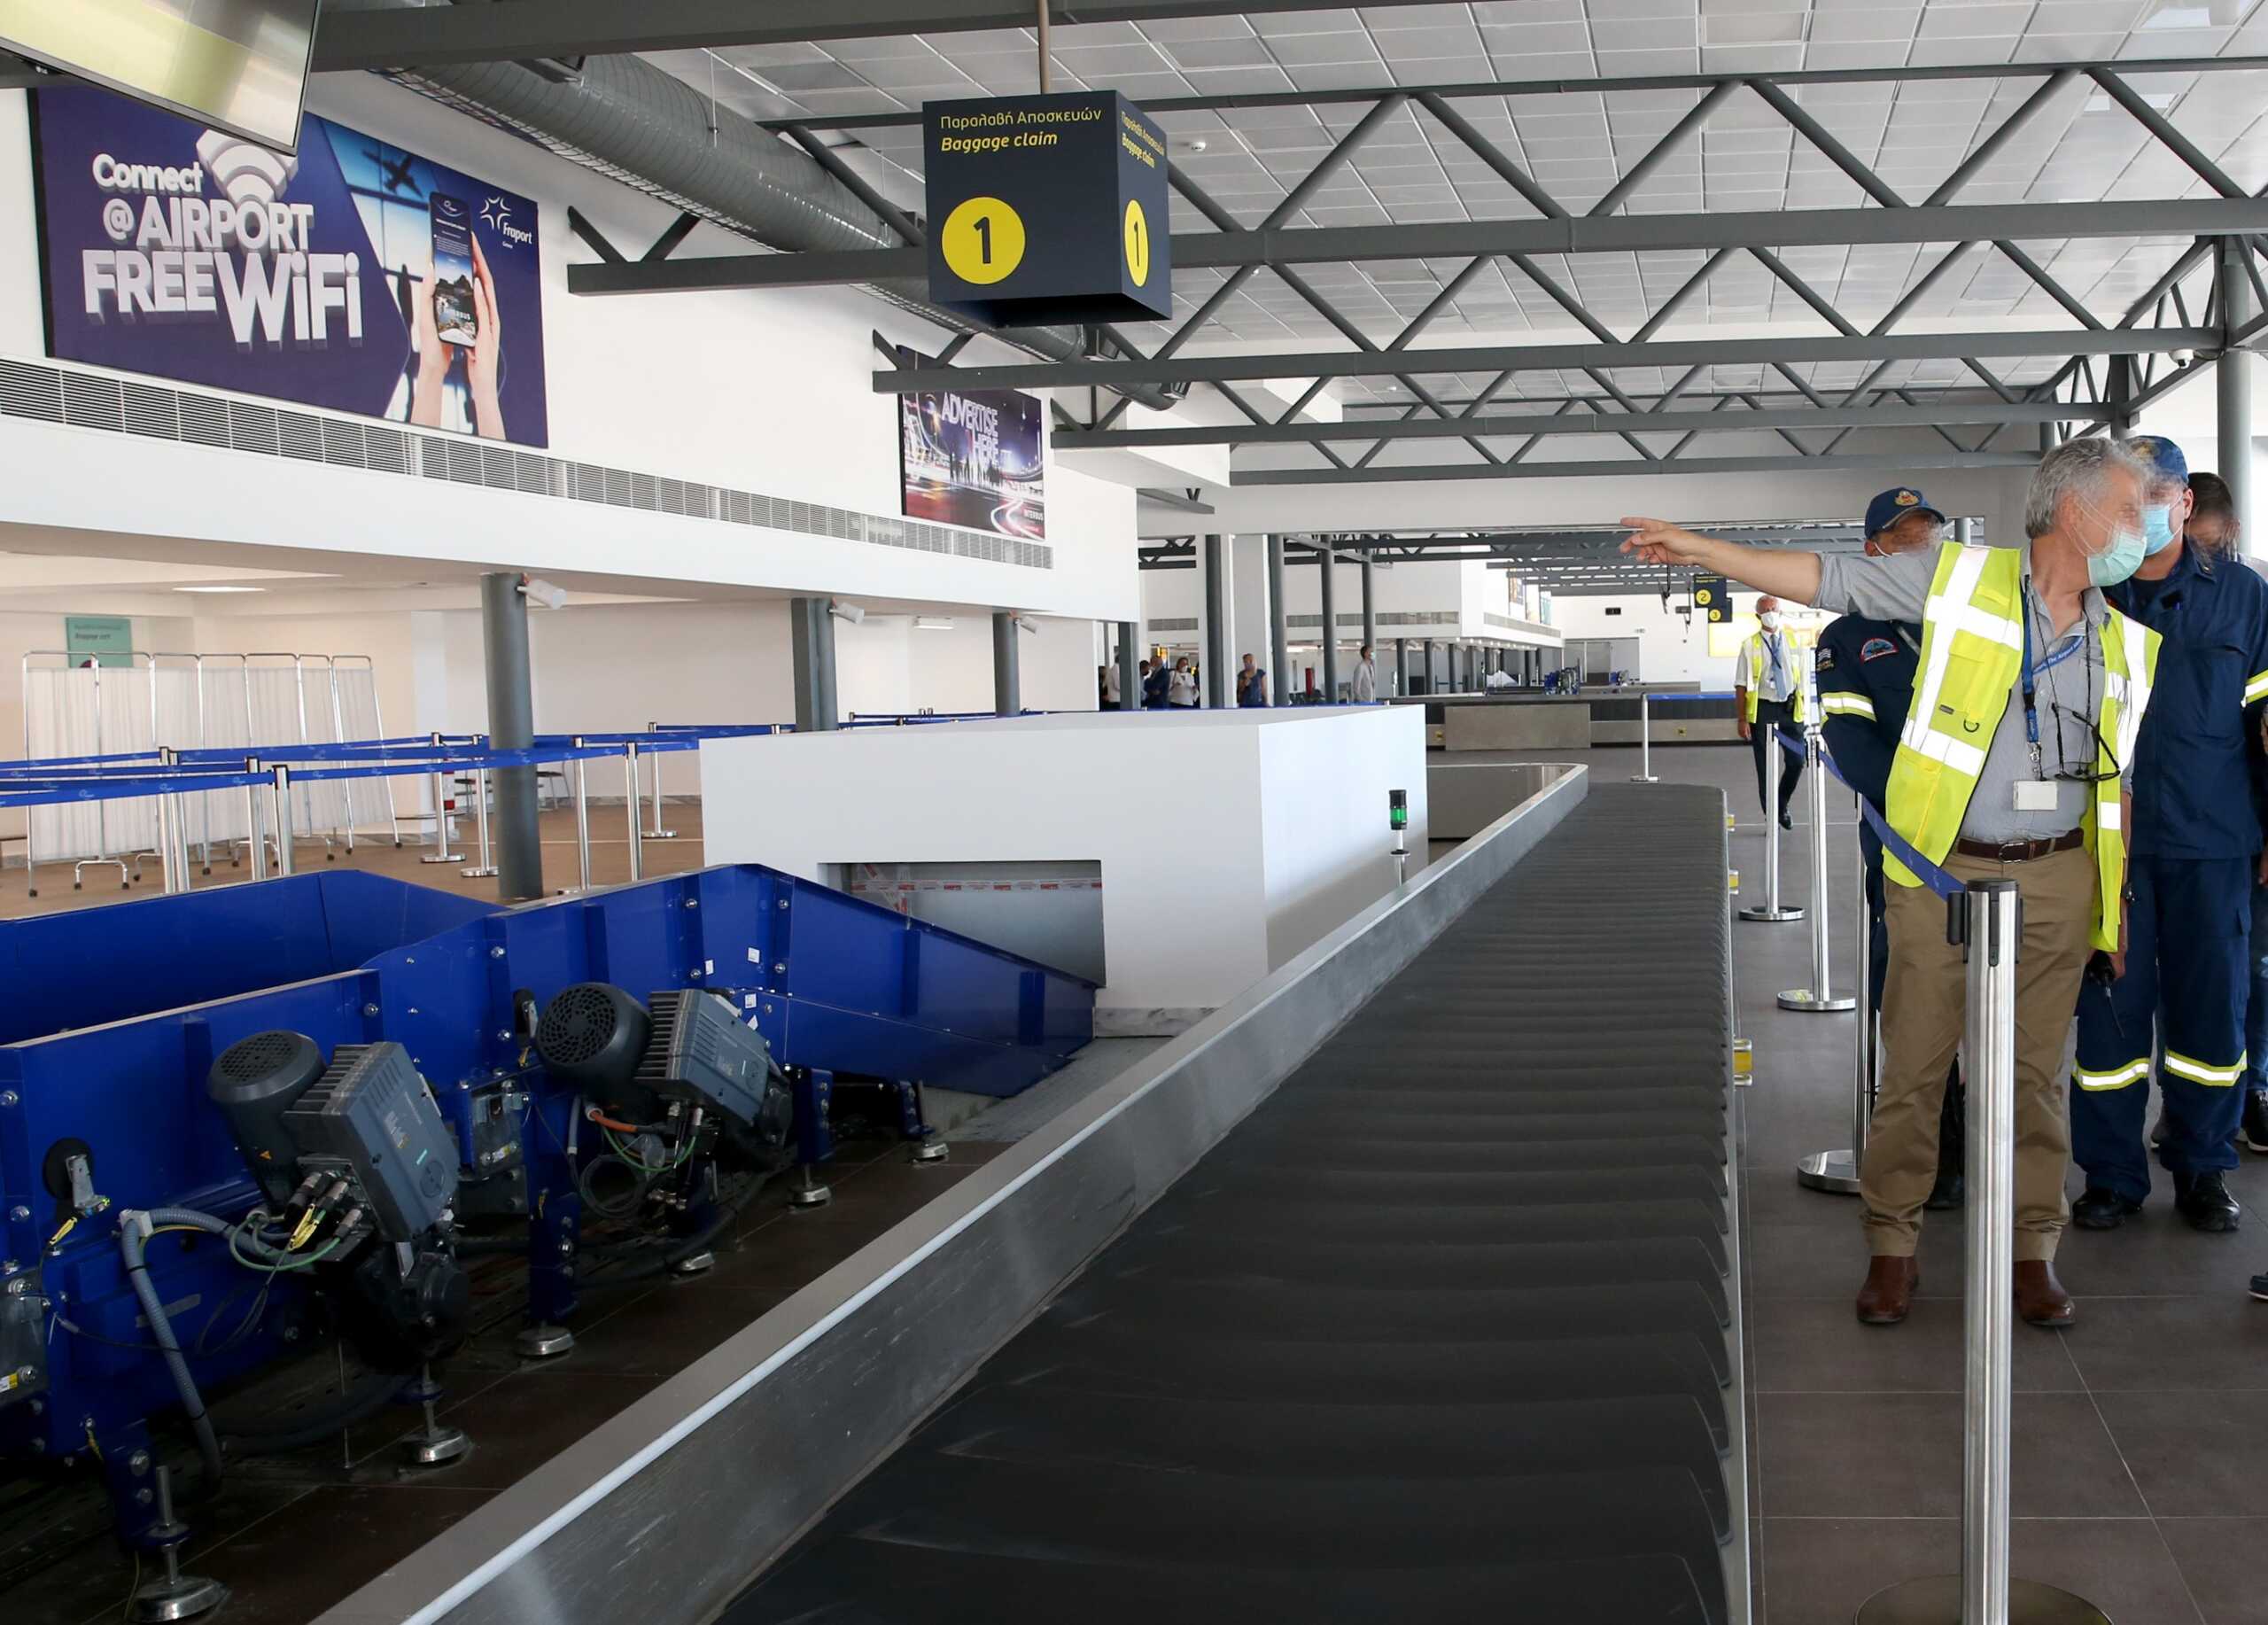 Κέρκυρα: Εργασίες στο αεροδρόμιο φέρνουν αναστολή λειτουργίας μέσα στον Ιανουάριο αλλά και μέσα τον Φεβρουάριο